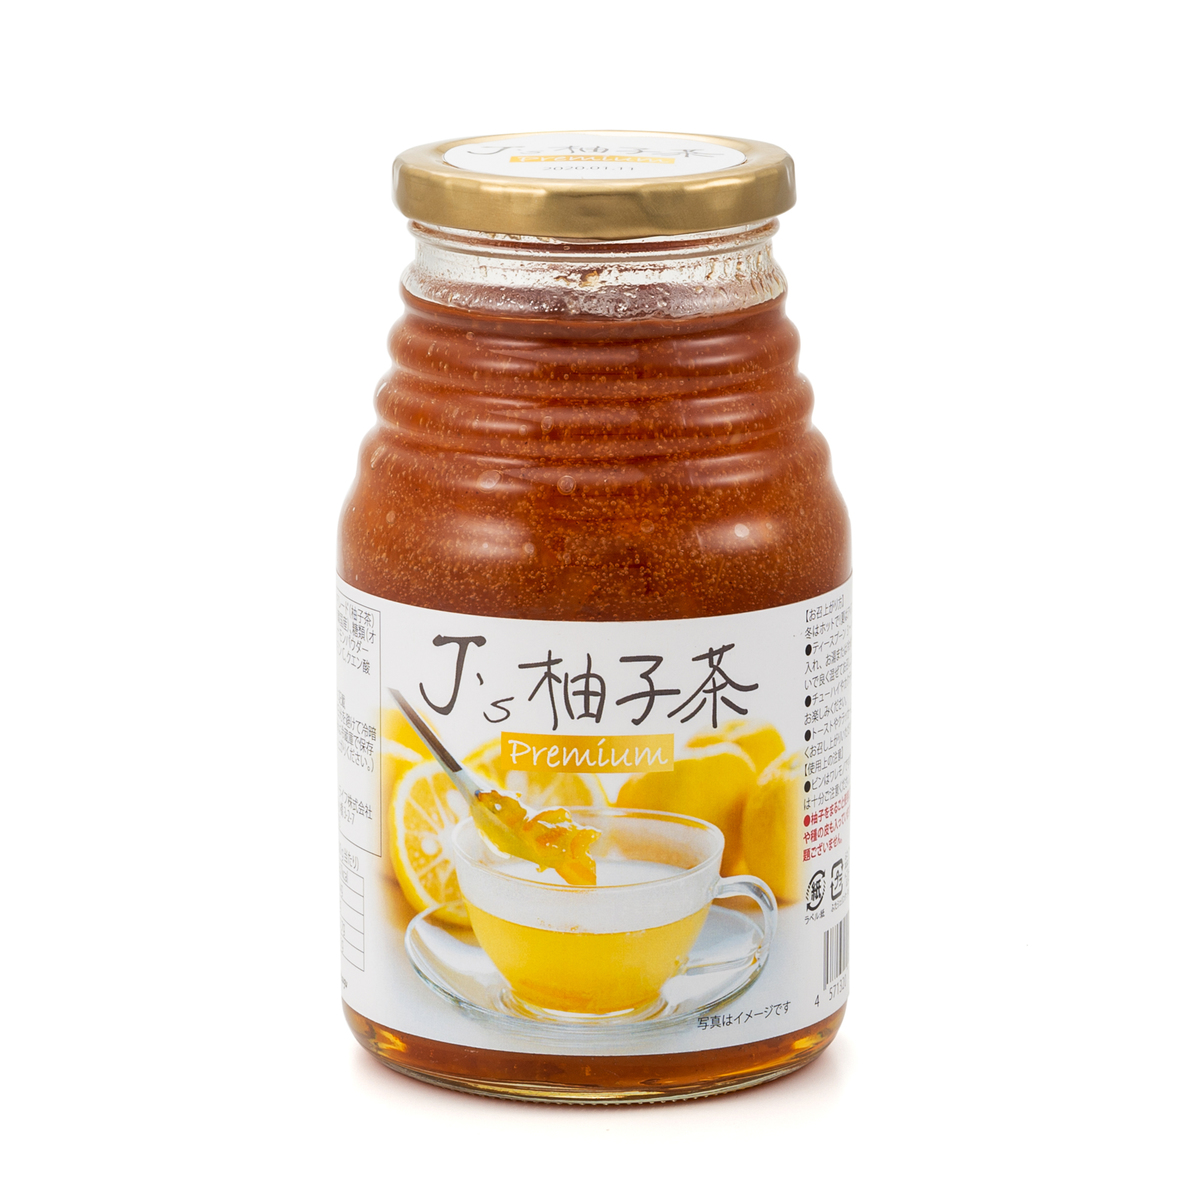 プレミアム さらり美味しい J’s柚子茶 2本セット